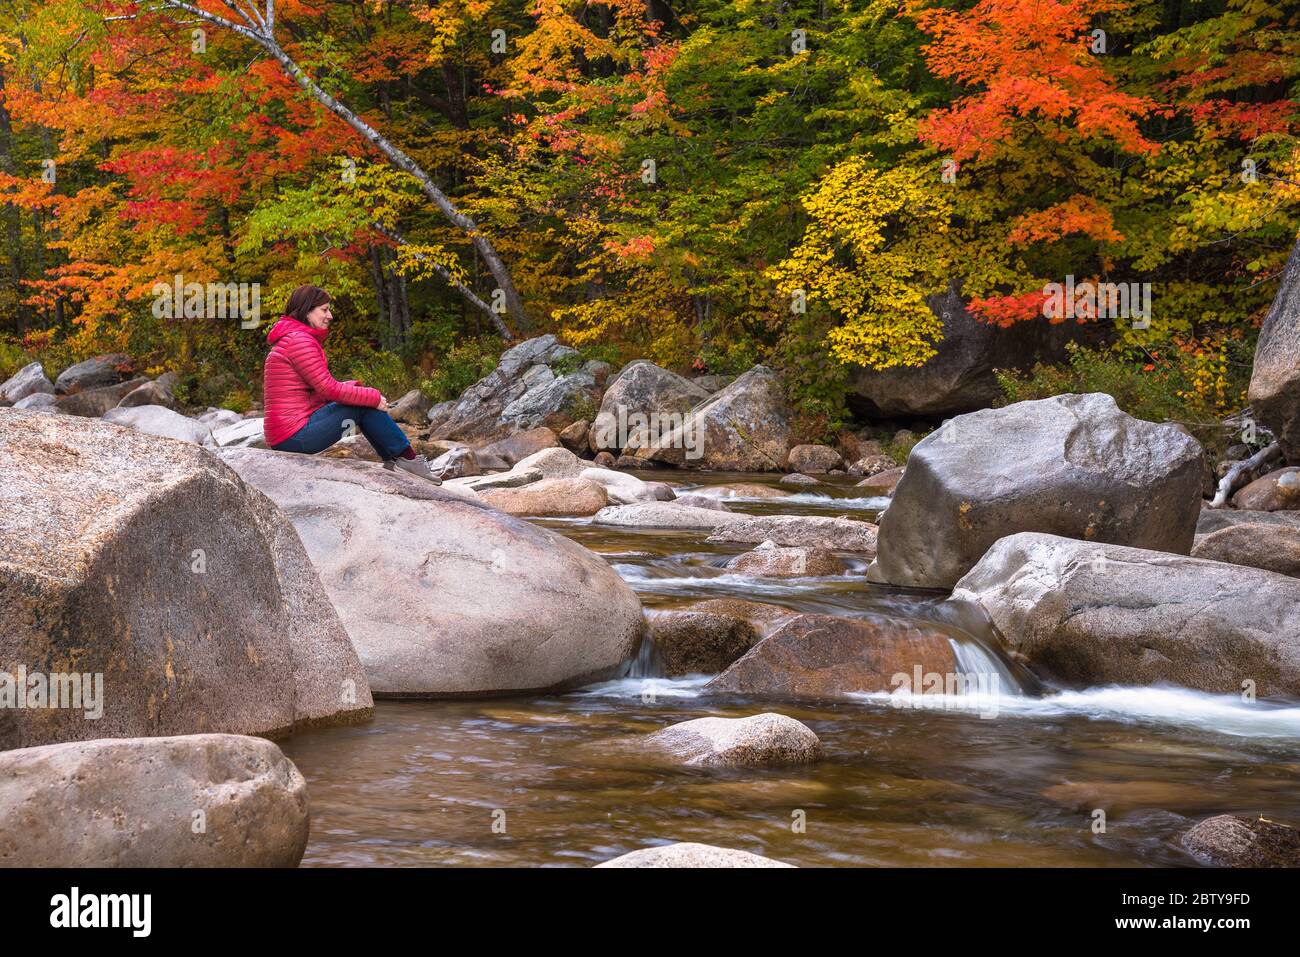 Einsame nachdenkliche Frau sitzt auf einem Felsen auf einem Berg Fluss an einem Herbsttag. Schöne Herbstfarben im Hintergrund. Stockfoto